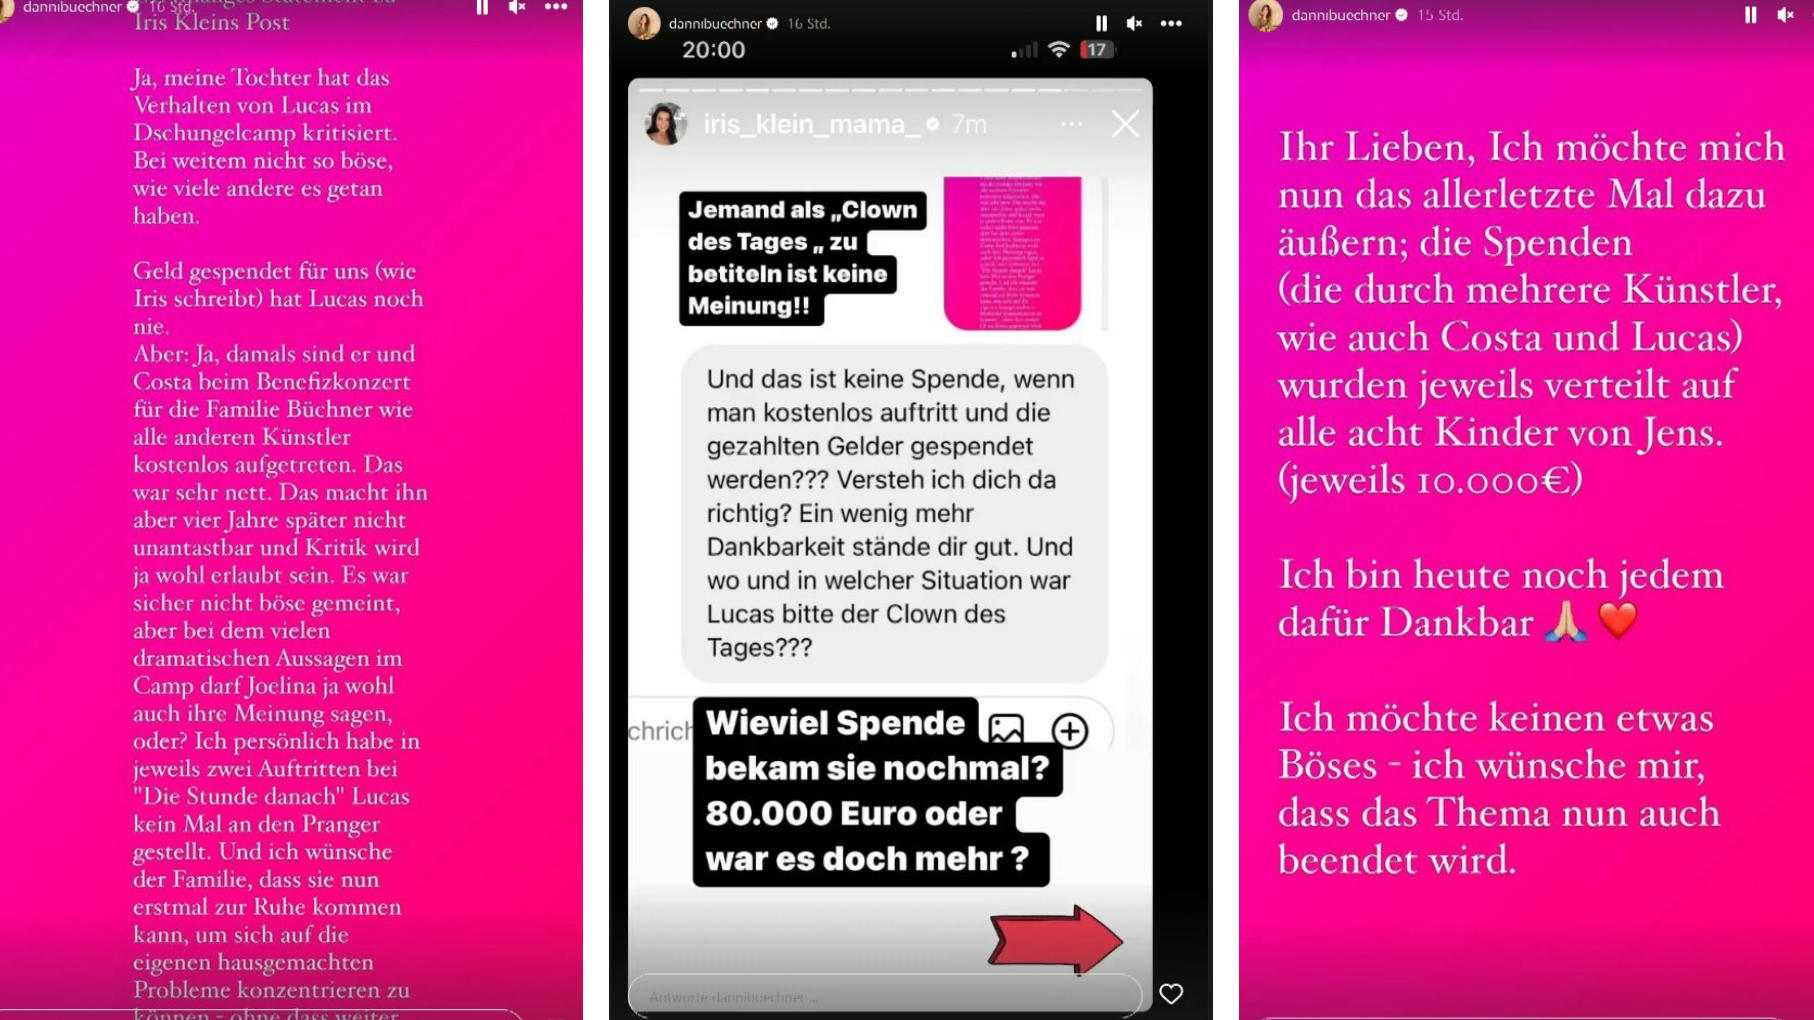 Nach "Clown"-Aussage: Iris Klein und Danni Büchner zoffen sich öffentlich über Instagram.